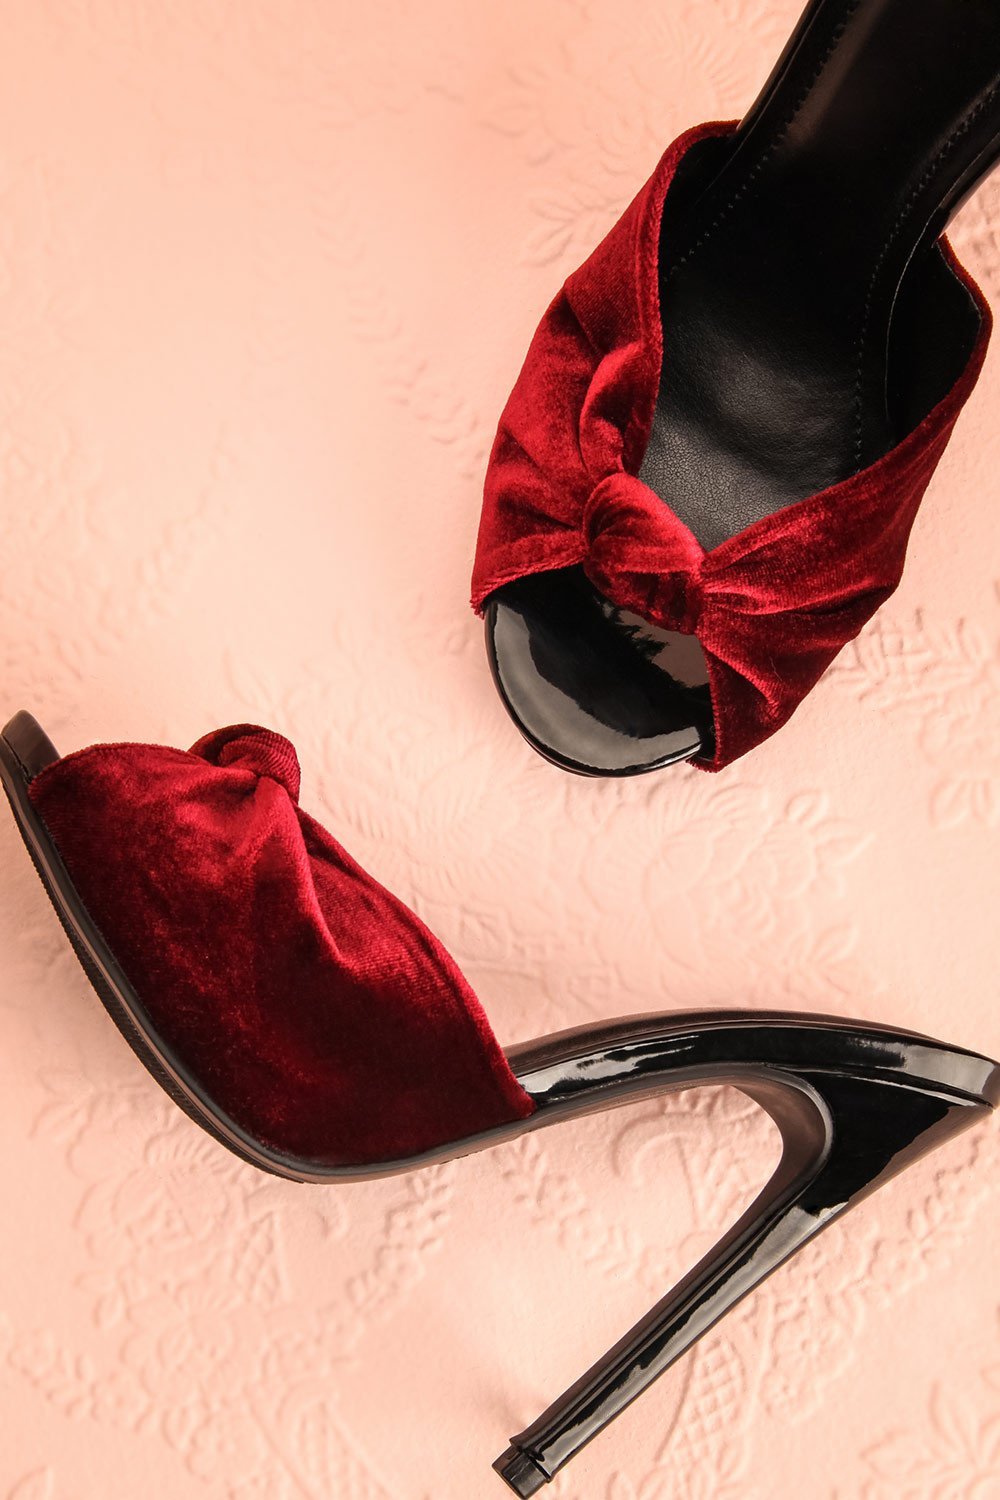 Gramado Rubis - Black and burgundy velvet sandals